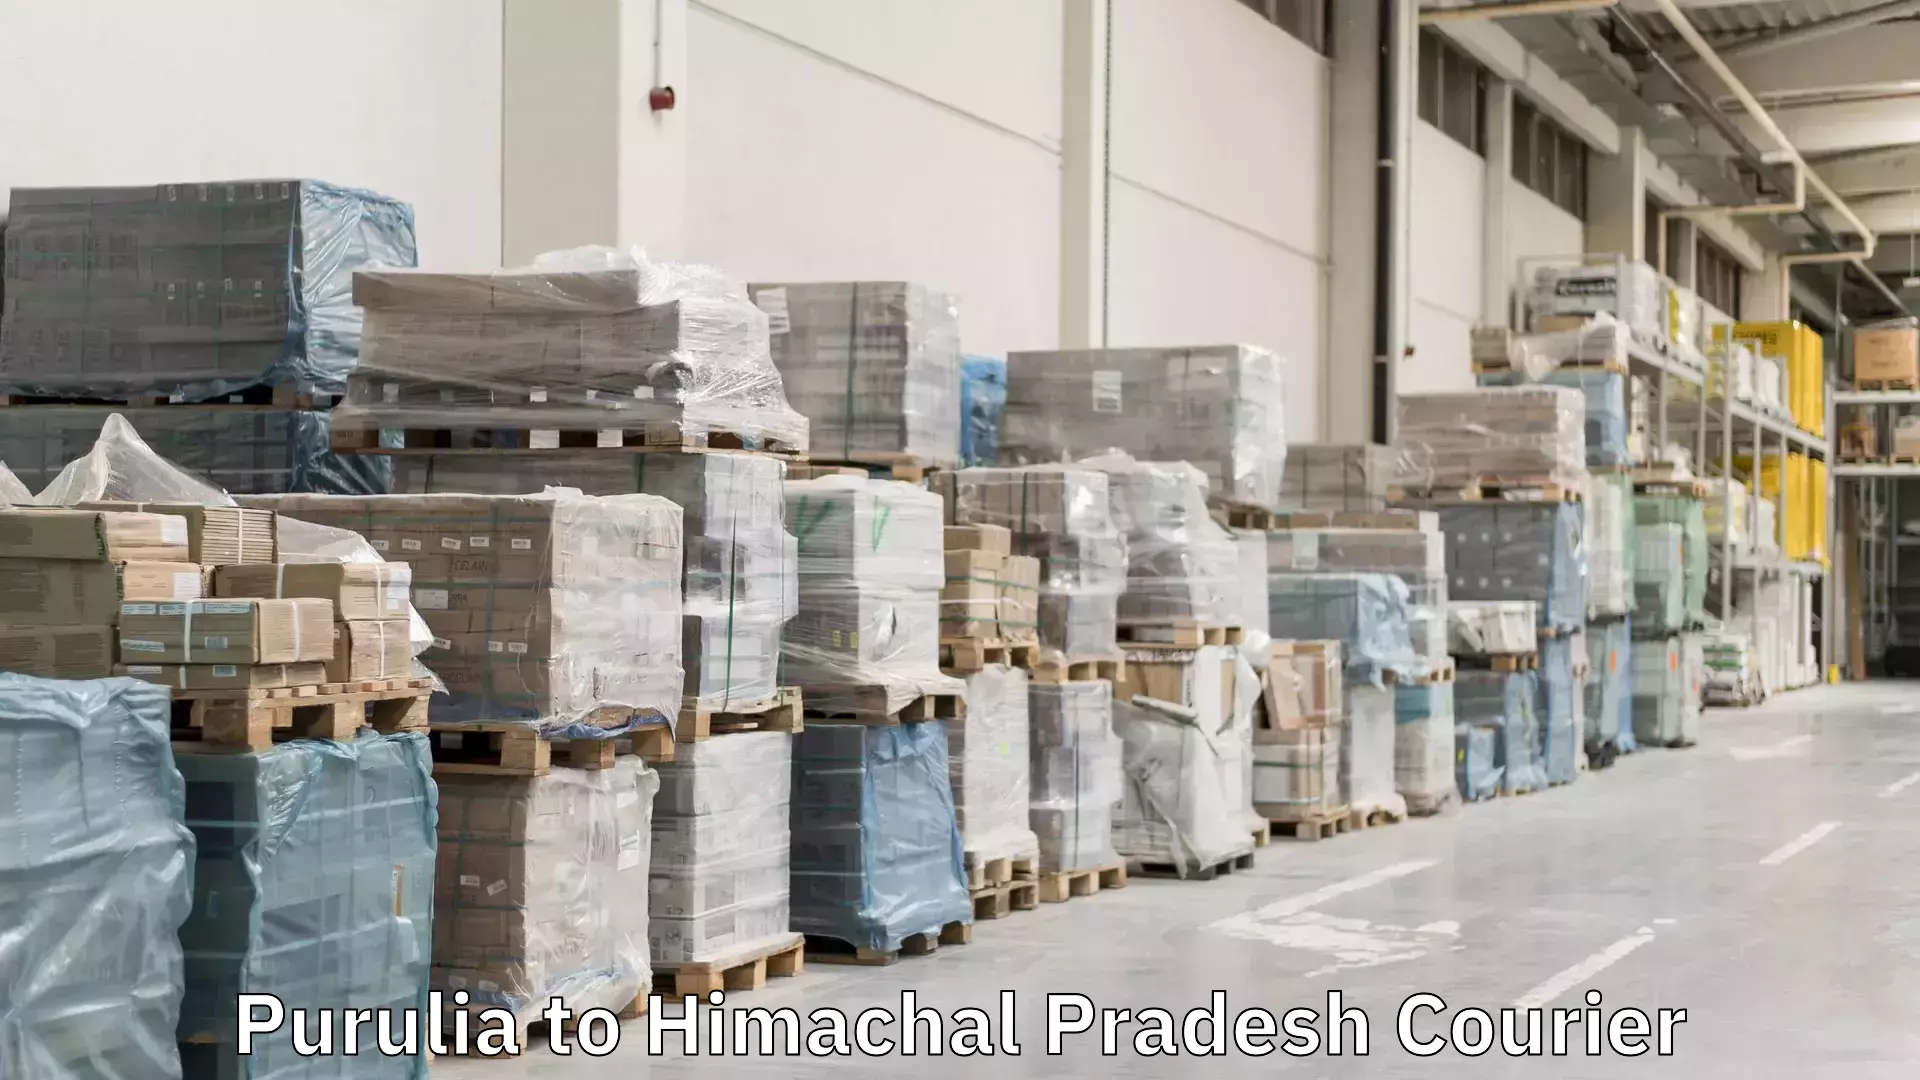 Door-to-door freight service Purulia to Himachal Pradesh